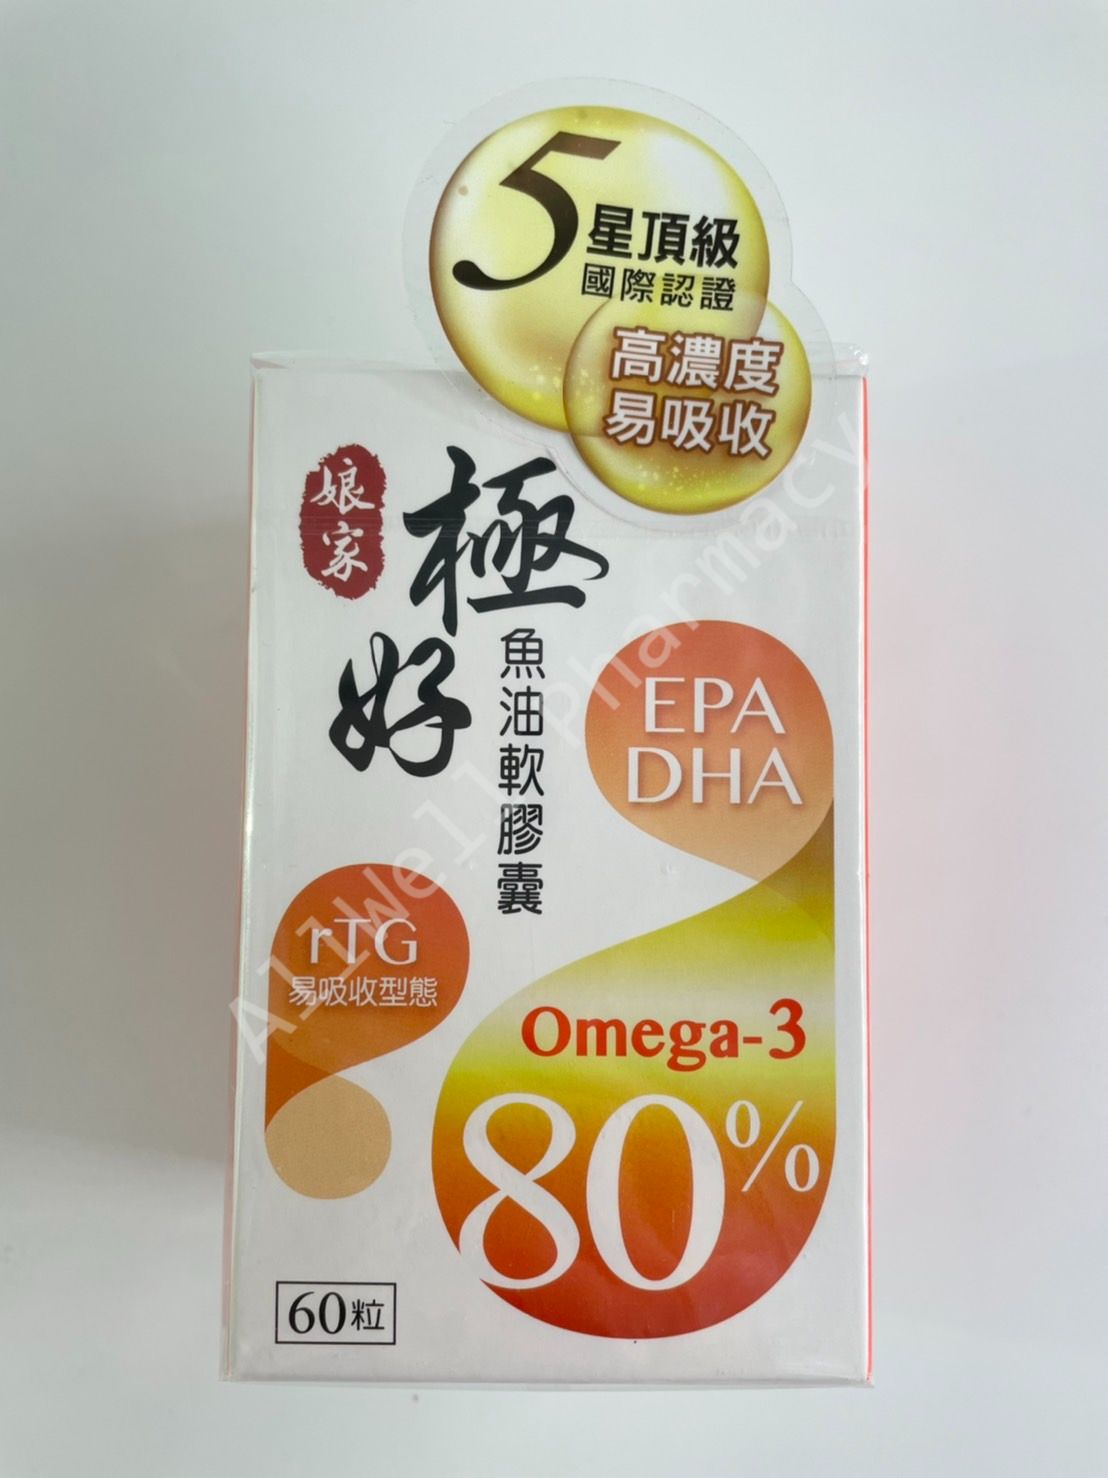 【超取/宅配免運】民視 娘家 極好魚油 60粒/盒 omega-3 80%高濃度魚油 r-TG易吸收型態